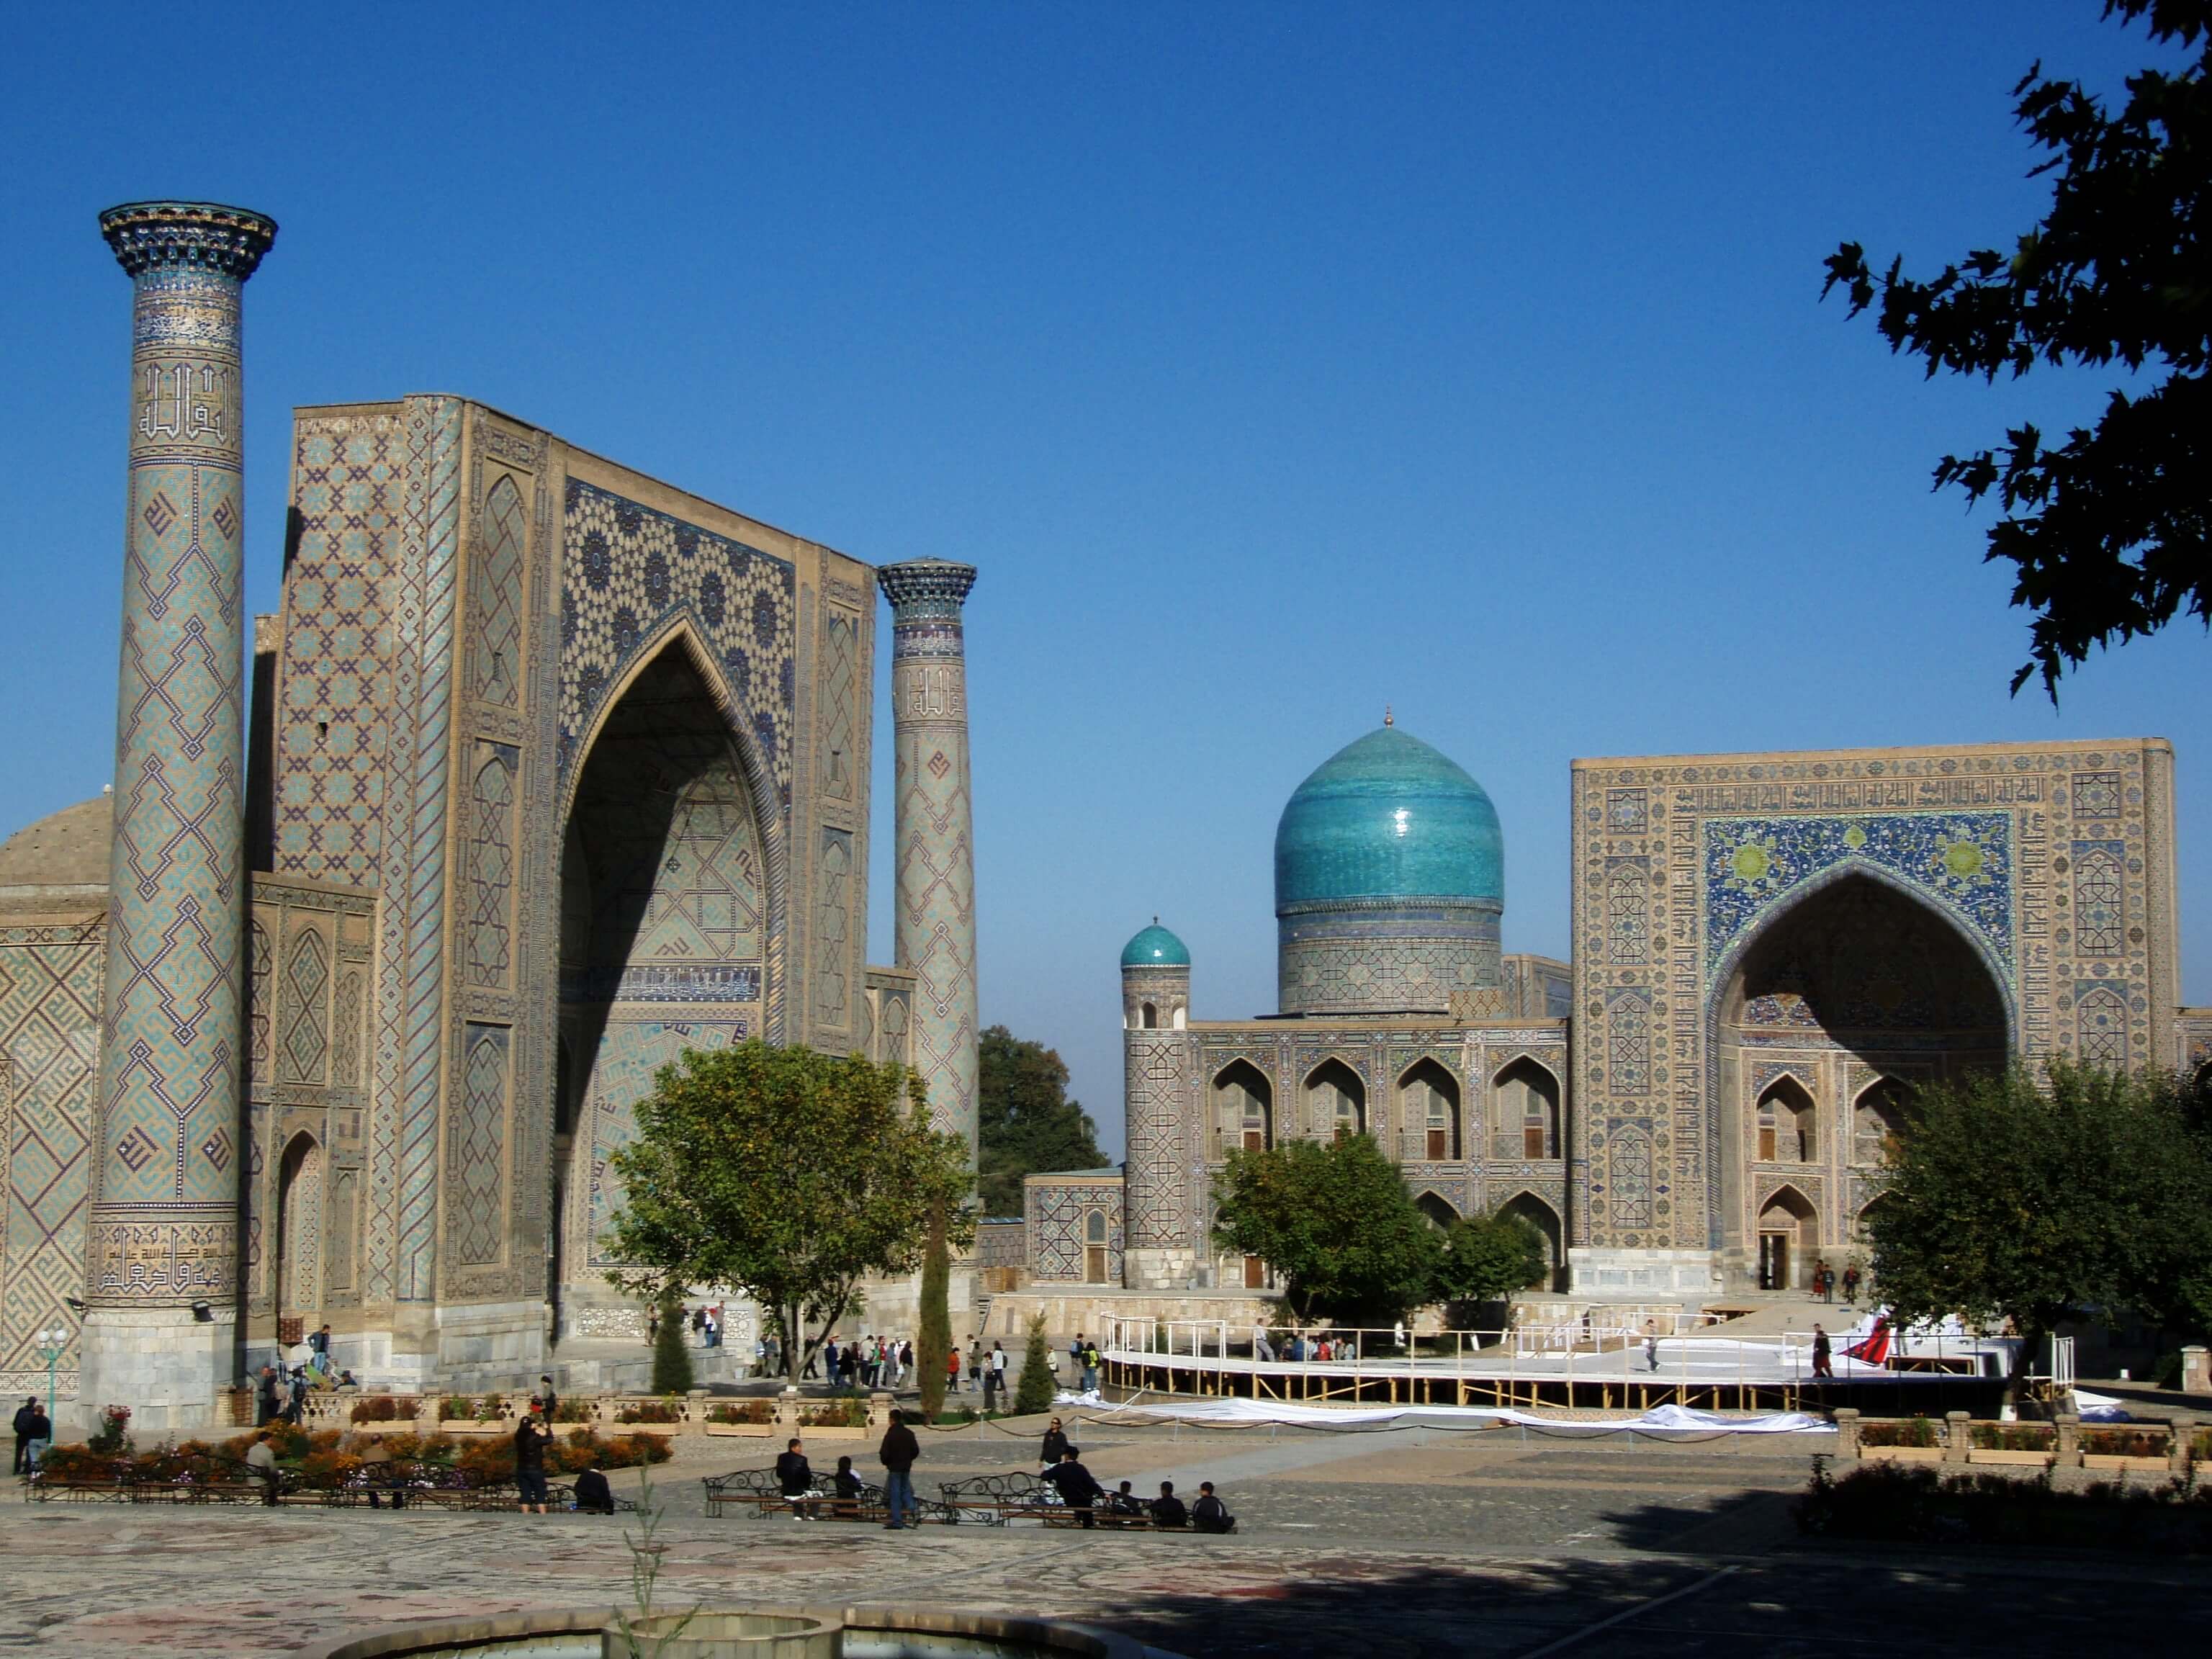 oezbekistan, plein keopels.jpg